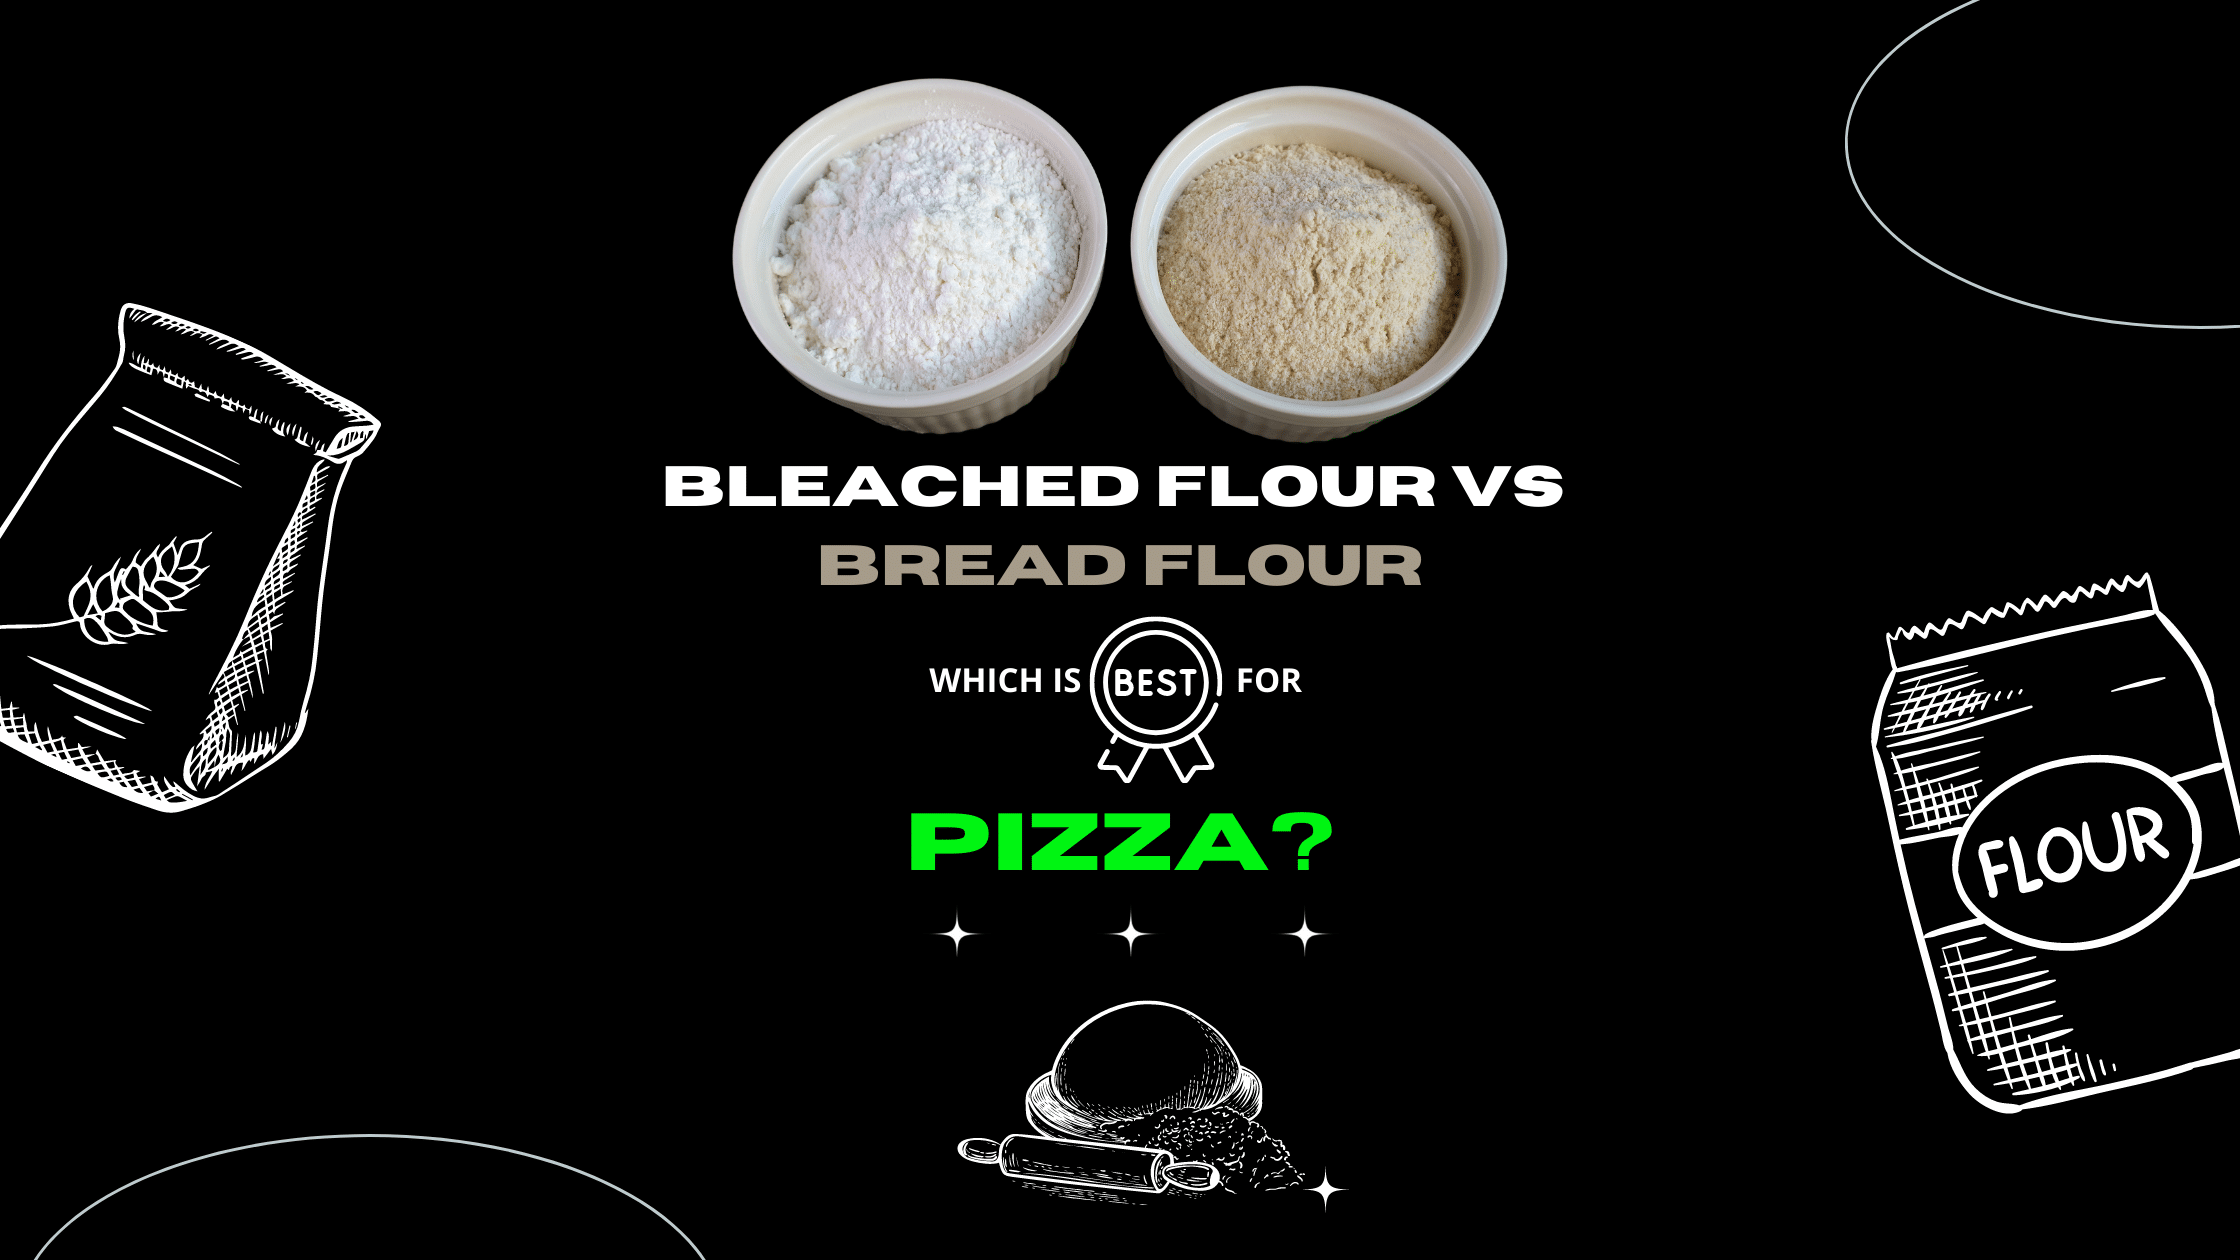 Bleached Flour vs Bread Flour